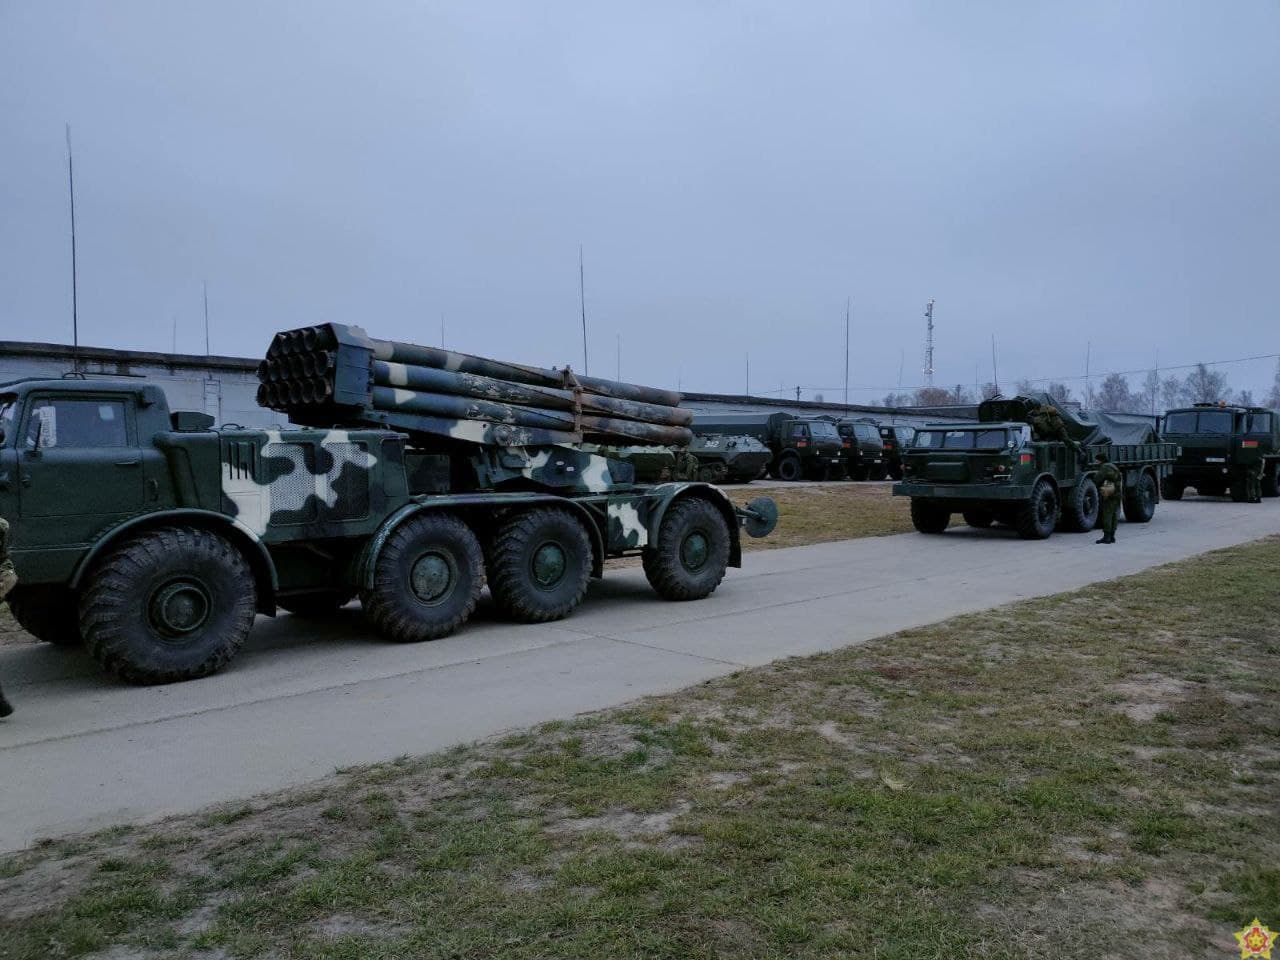 Розрахунки білоруської реактивної артилерії відпрацьовують раптове висування та розгортання в заданому кордоні, фото - прес-служба Міноборони РБ